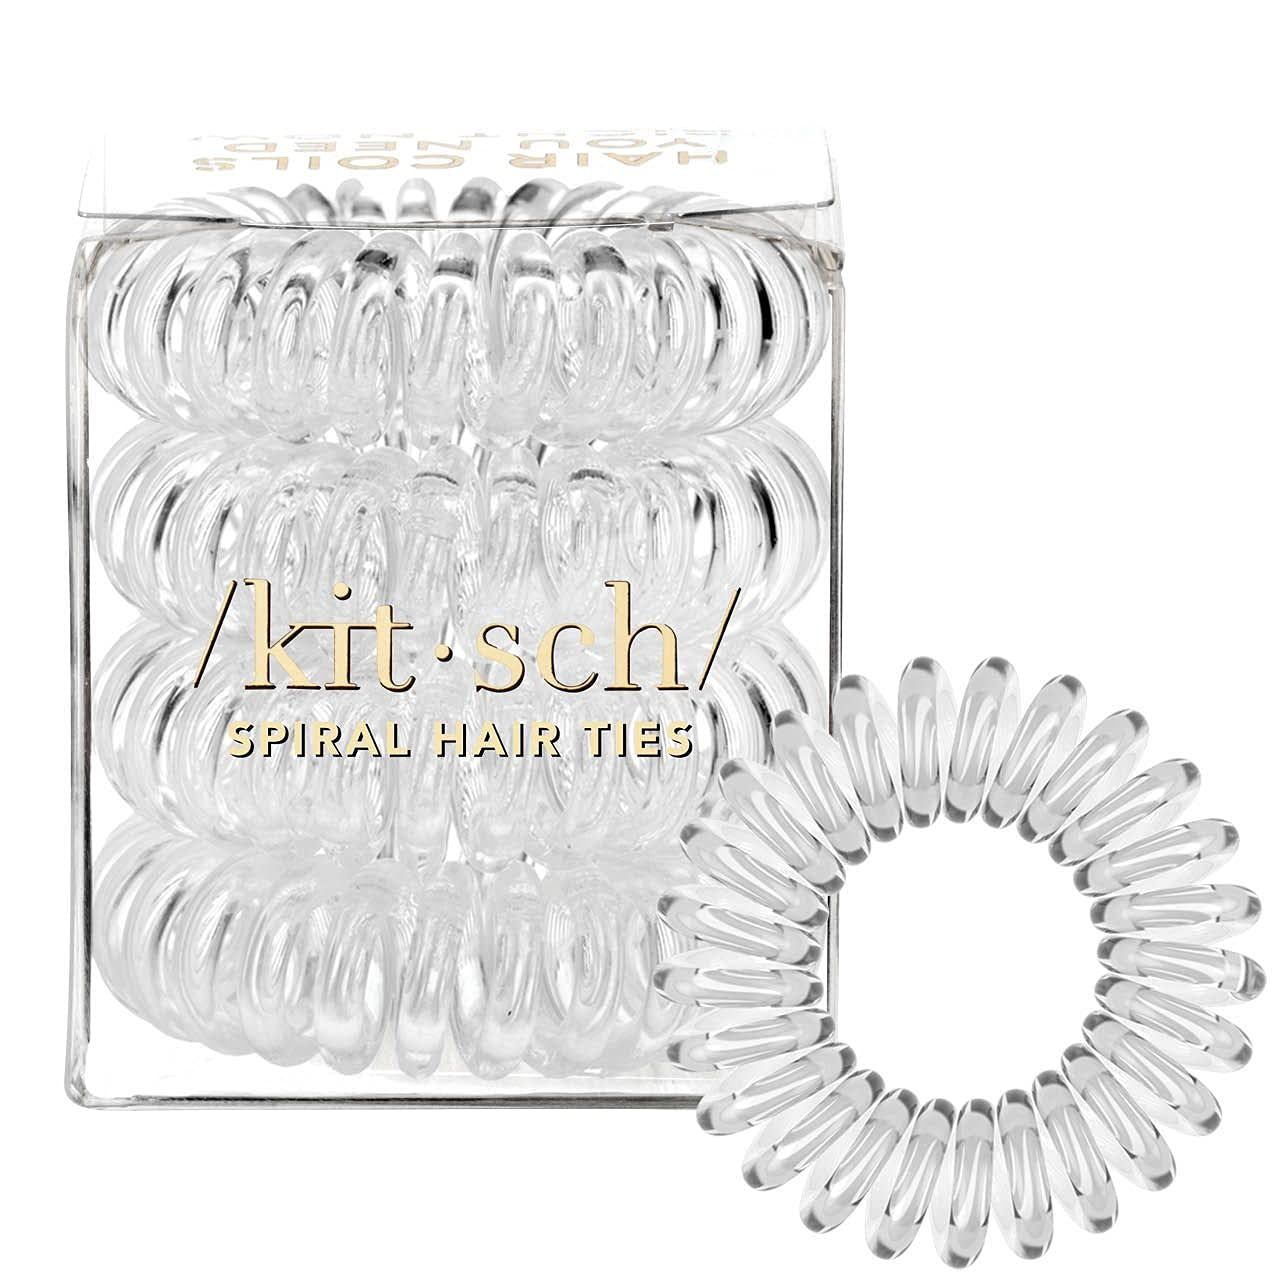 Kitsch Hair Ties for Women - Waterproof Hair Elastics for Women | Spiral Hair Ties for Women with... | Amazon (US)